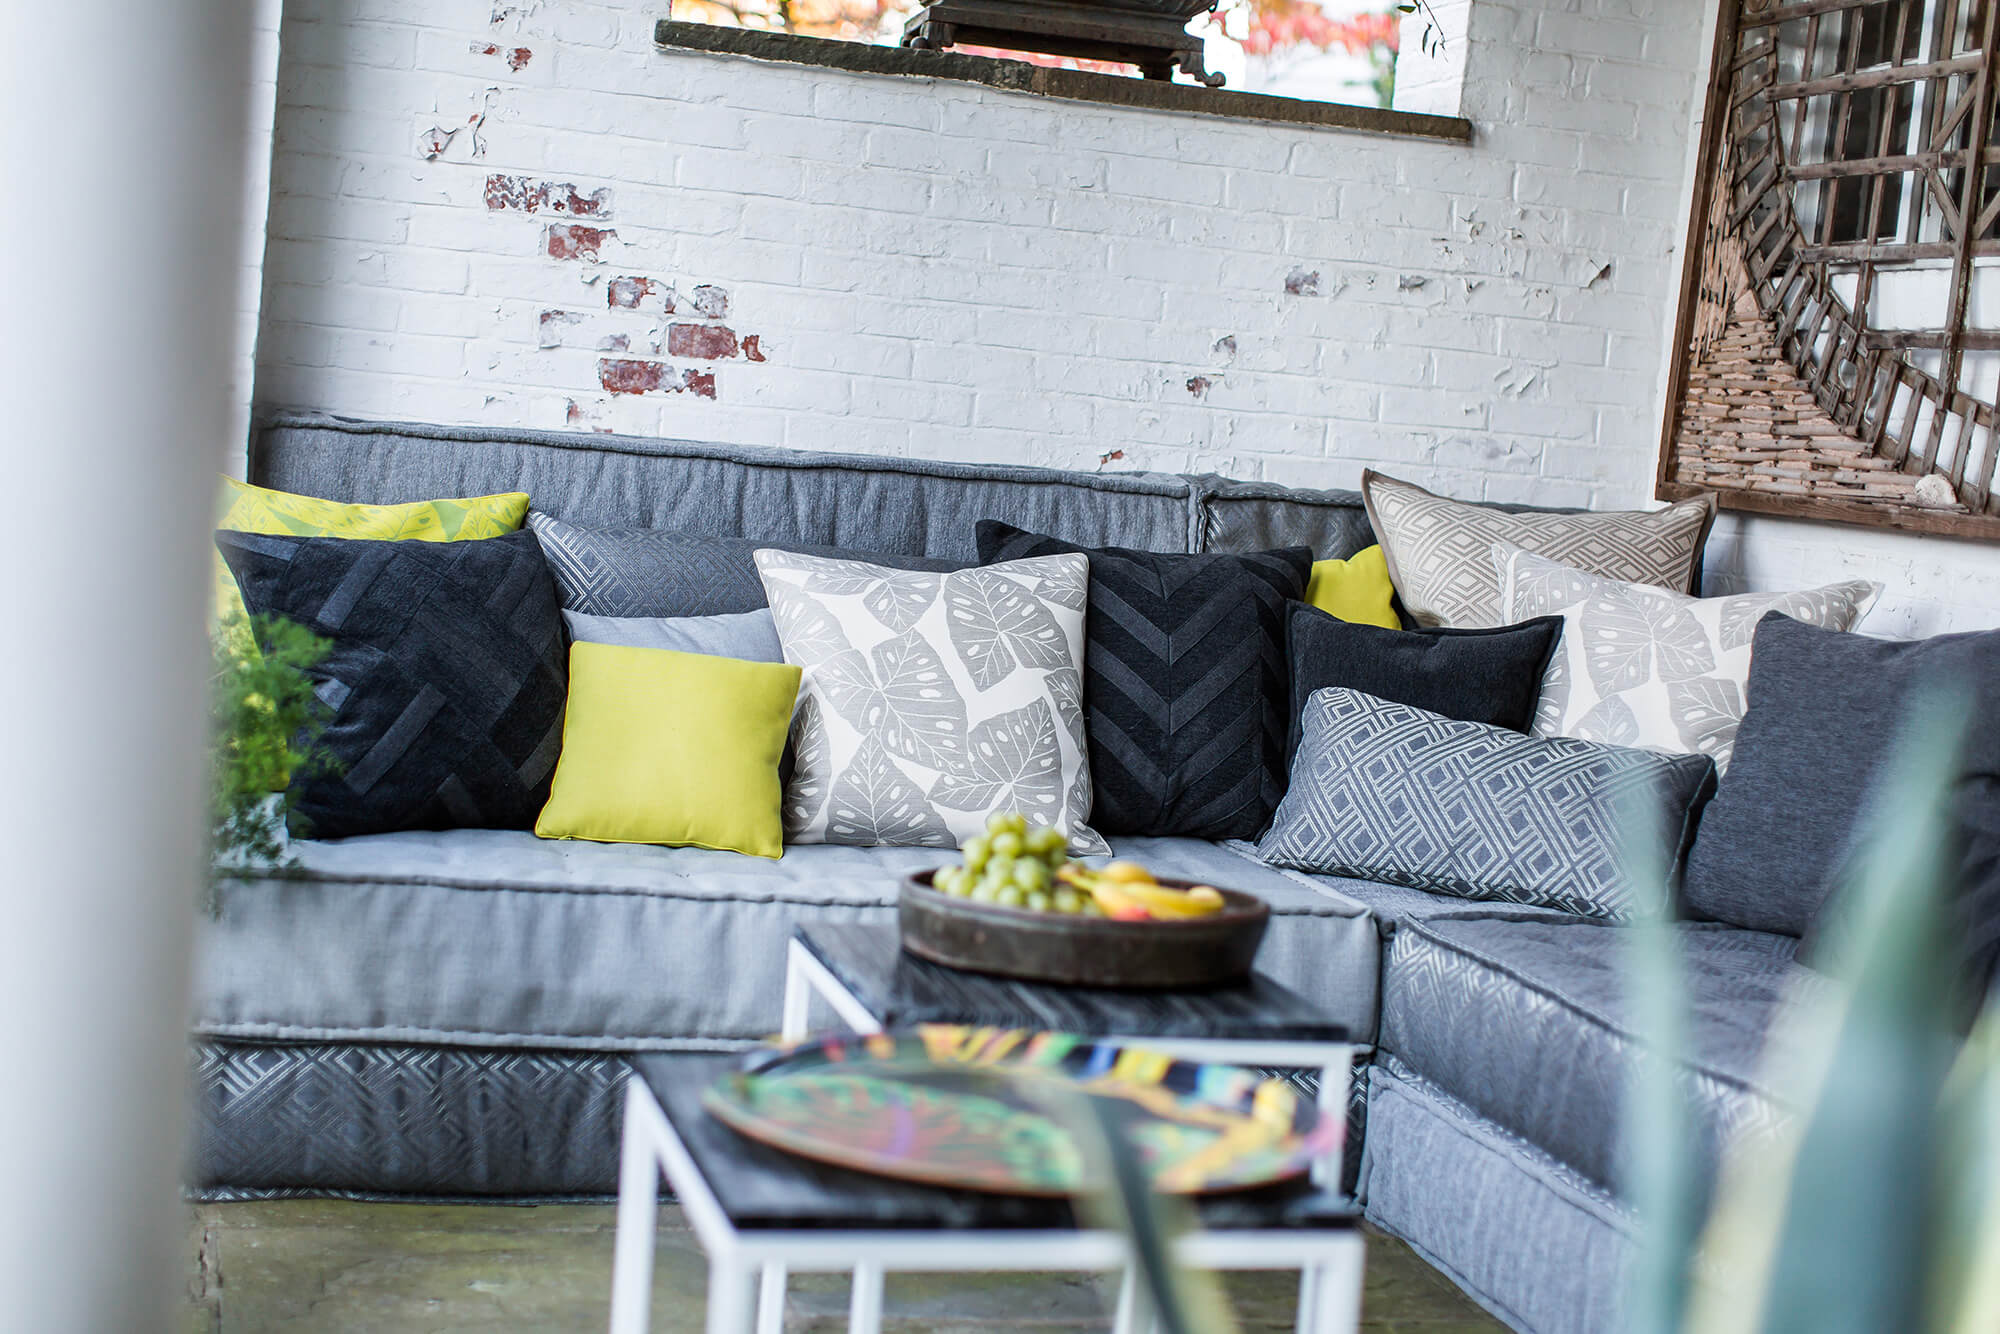 Outdoor-Sofa mit grauen Polstern und vielen grauen Kissen sowie einige grüne Akzentkissen